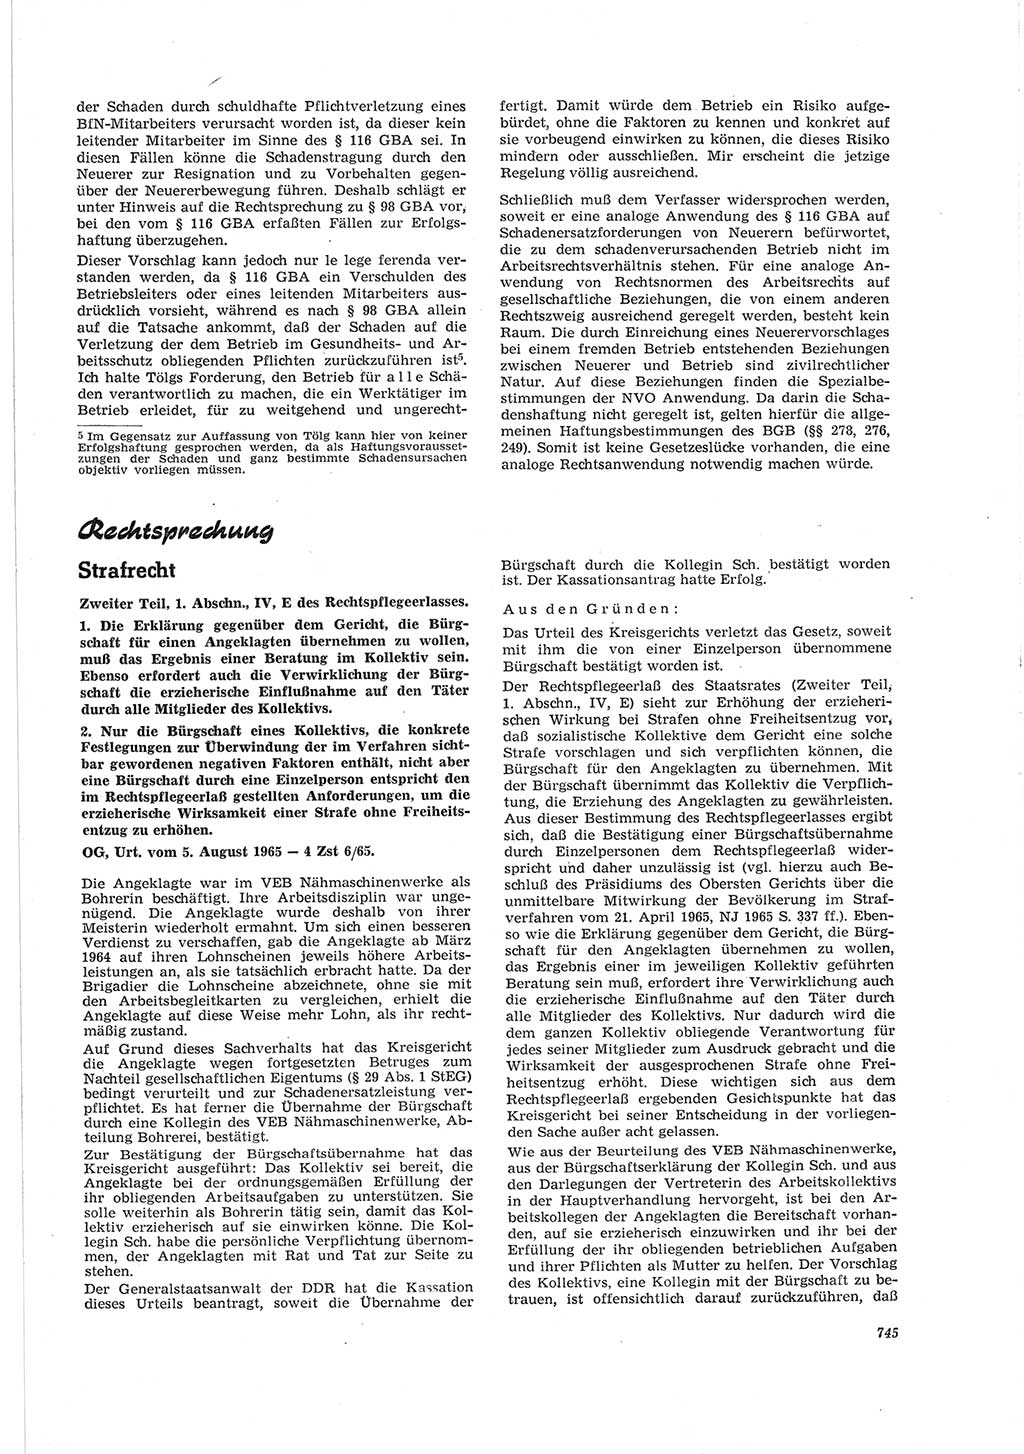 Neue Justiz (NJ), Zeitschrift für Recht und Rechtswissenschaft [Deutsche Demokratische Republik (DDR)], 19. Jahrgang 1965, Seite 745 (NJ DDR 1965, S. 745)